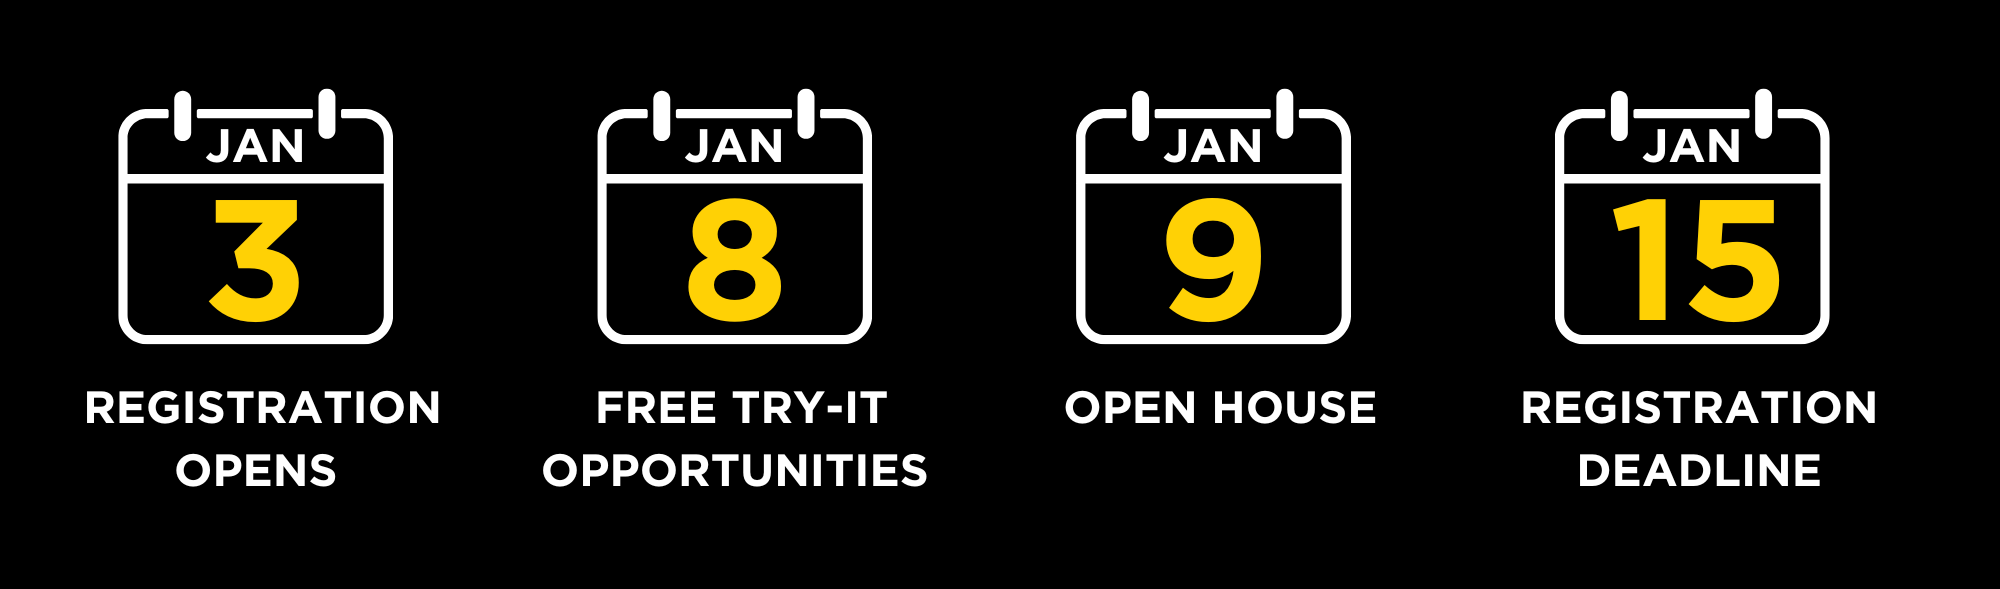 Jan 3 - Registration Opens, Jan 8 - Free Try-it Opportunities, Jan 9 -Open House, Jan 15 - Registration 